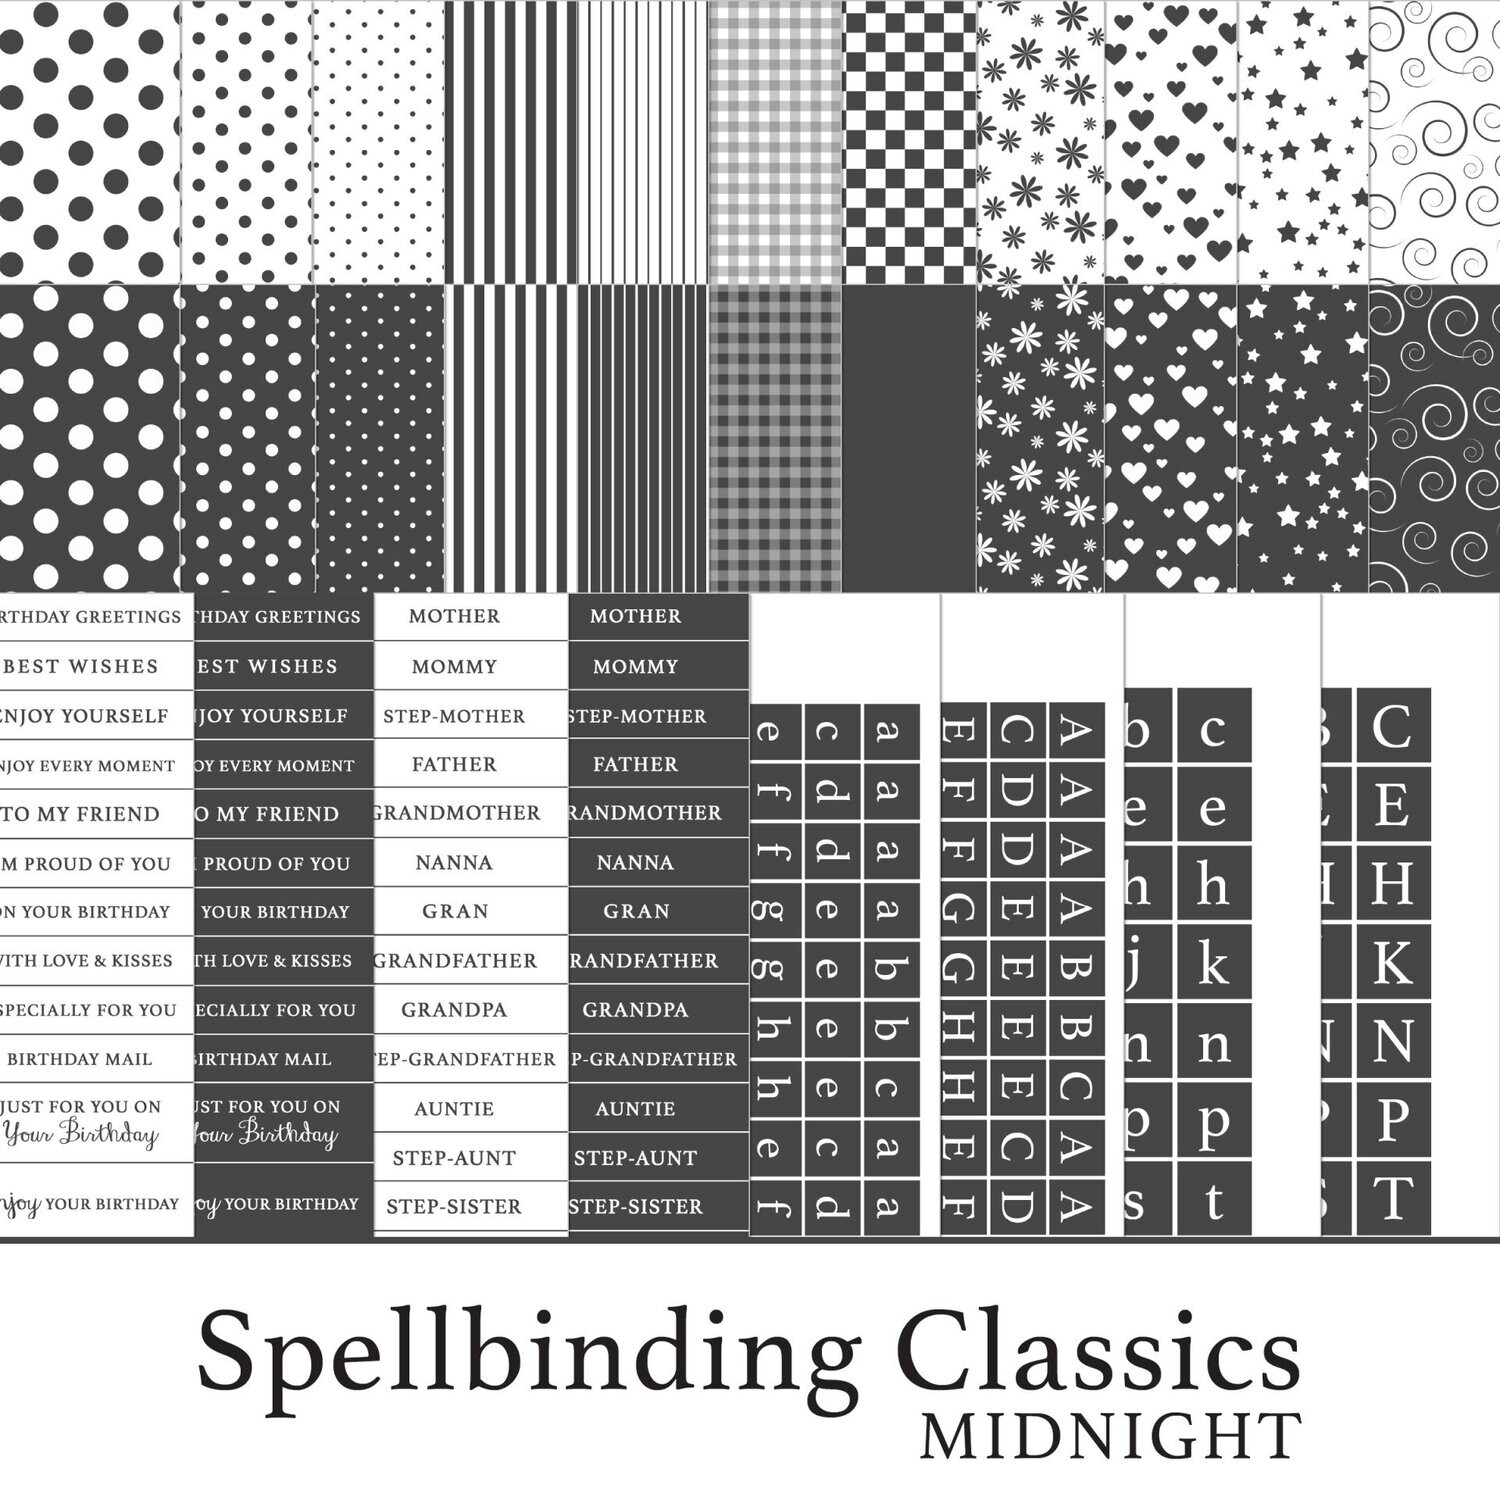 Spellbinding Classics Greys Midnight Digital Kit